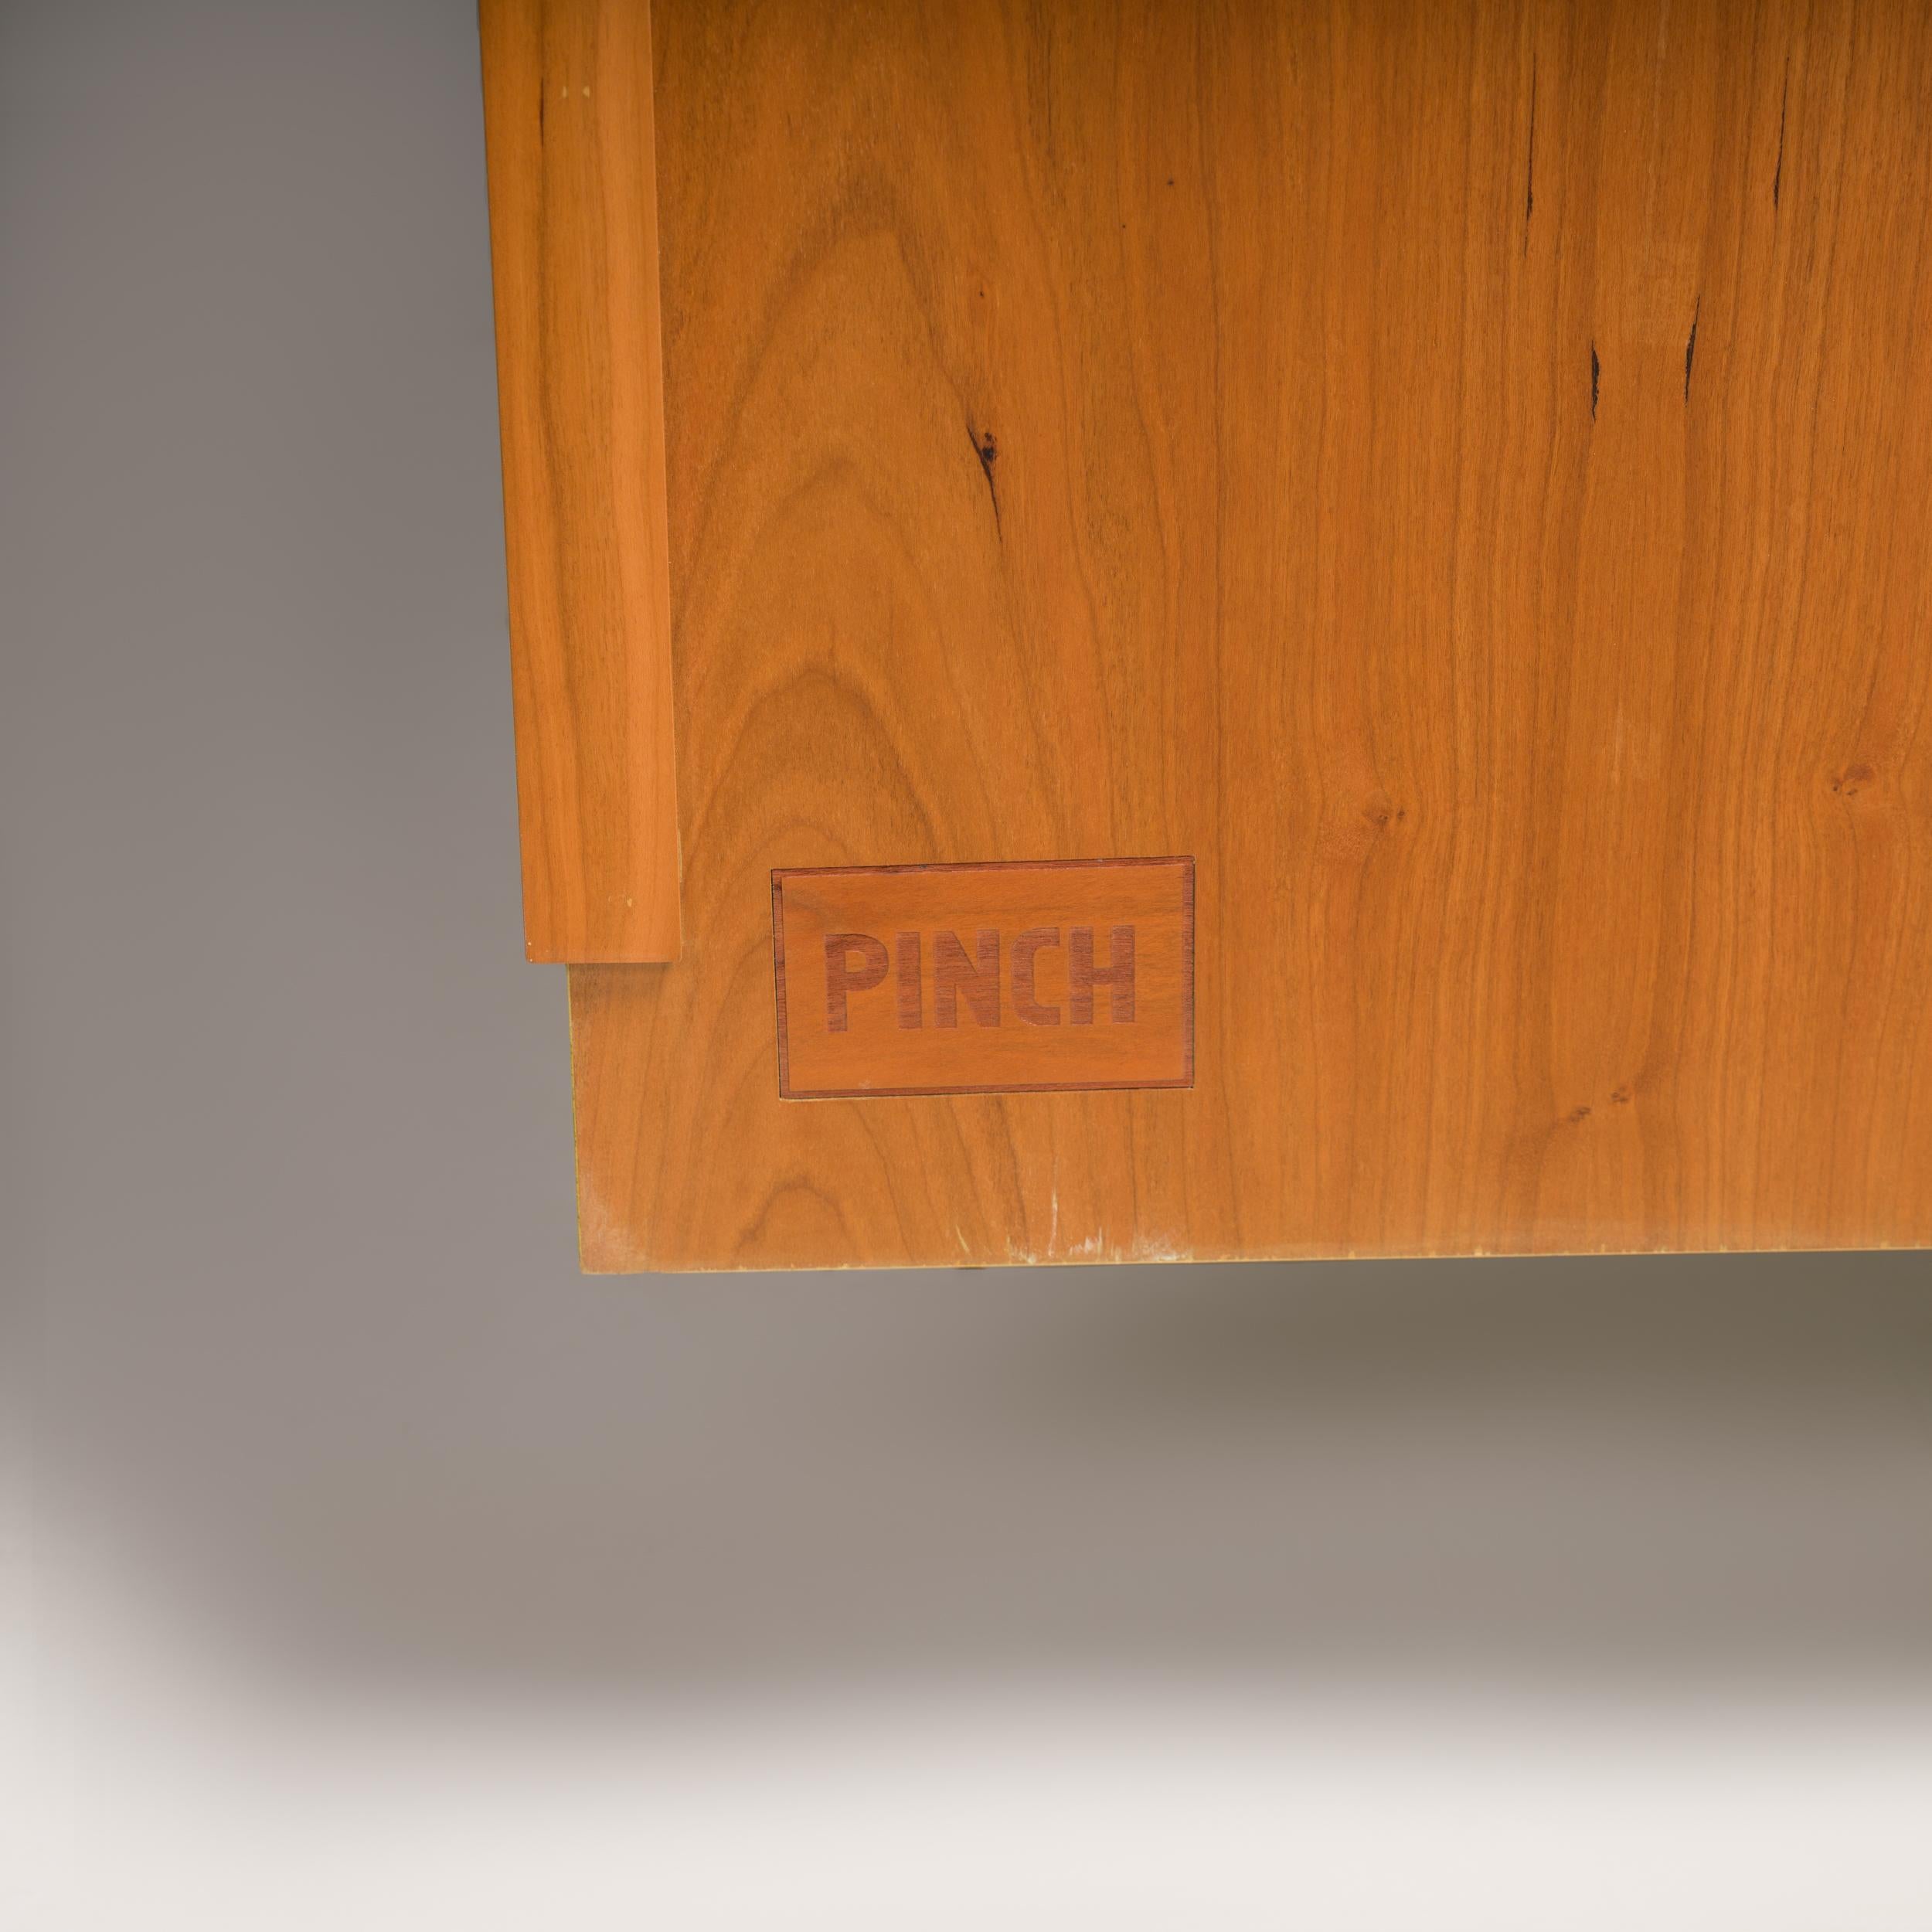 British Pinch Green Alba Large Oak Kitchen Storage Cabinet For Sale 6